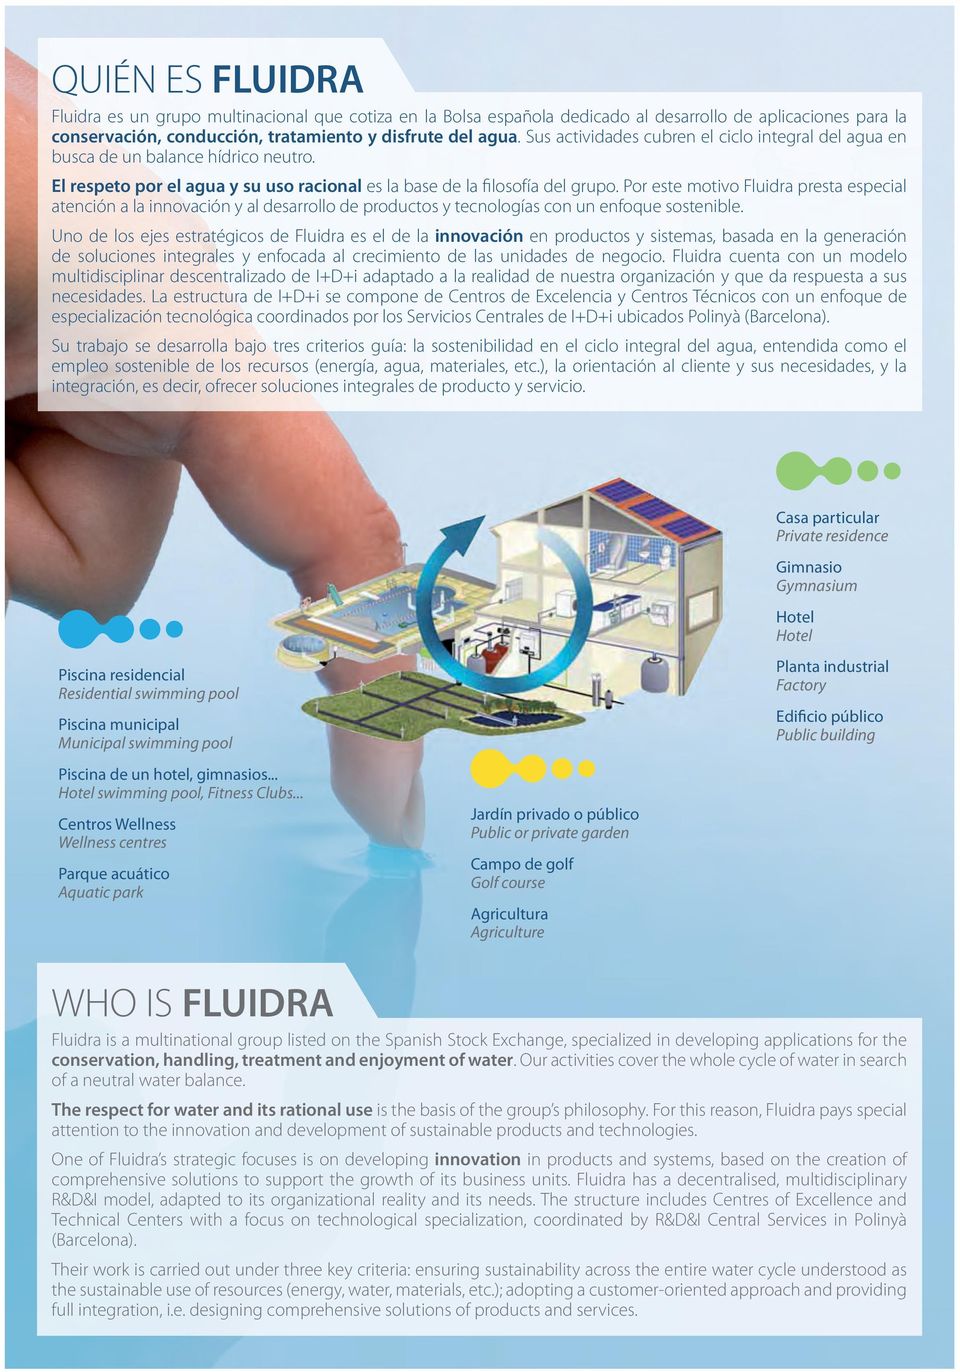 Por este motivo Fluidra presta especial atención a la innovación y al desarrollo de productos y tecnologías con un enfoque sostenible.